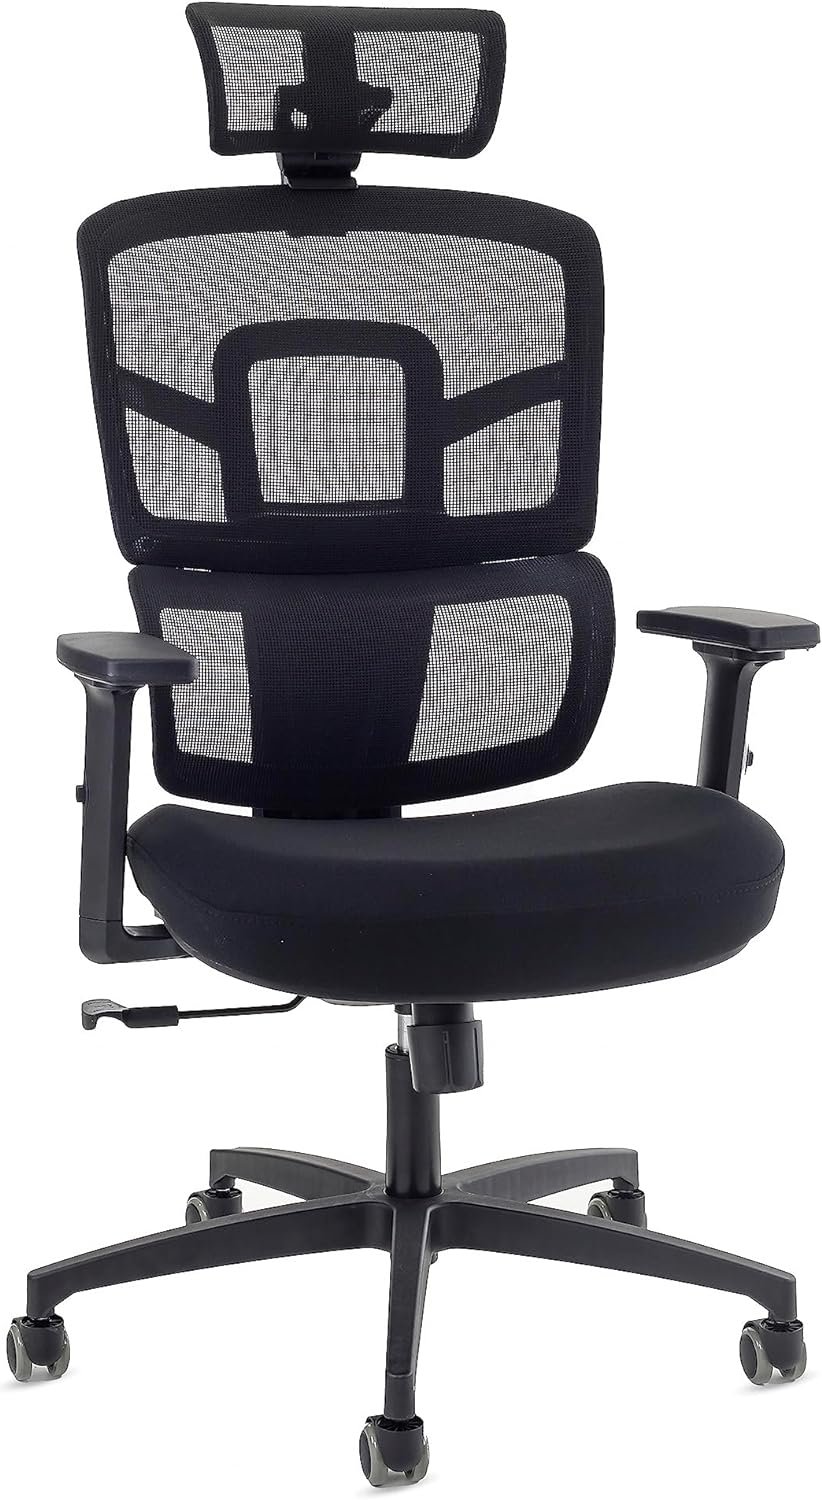 Cadeira ergonômica Makkon MK-720 - Melhores cadeiras ergonômicas com apoio para lombar